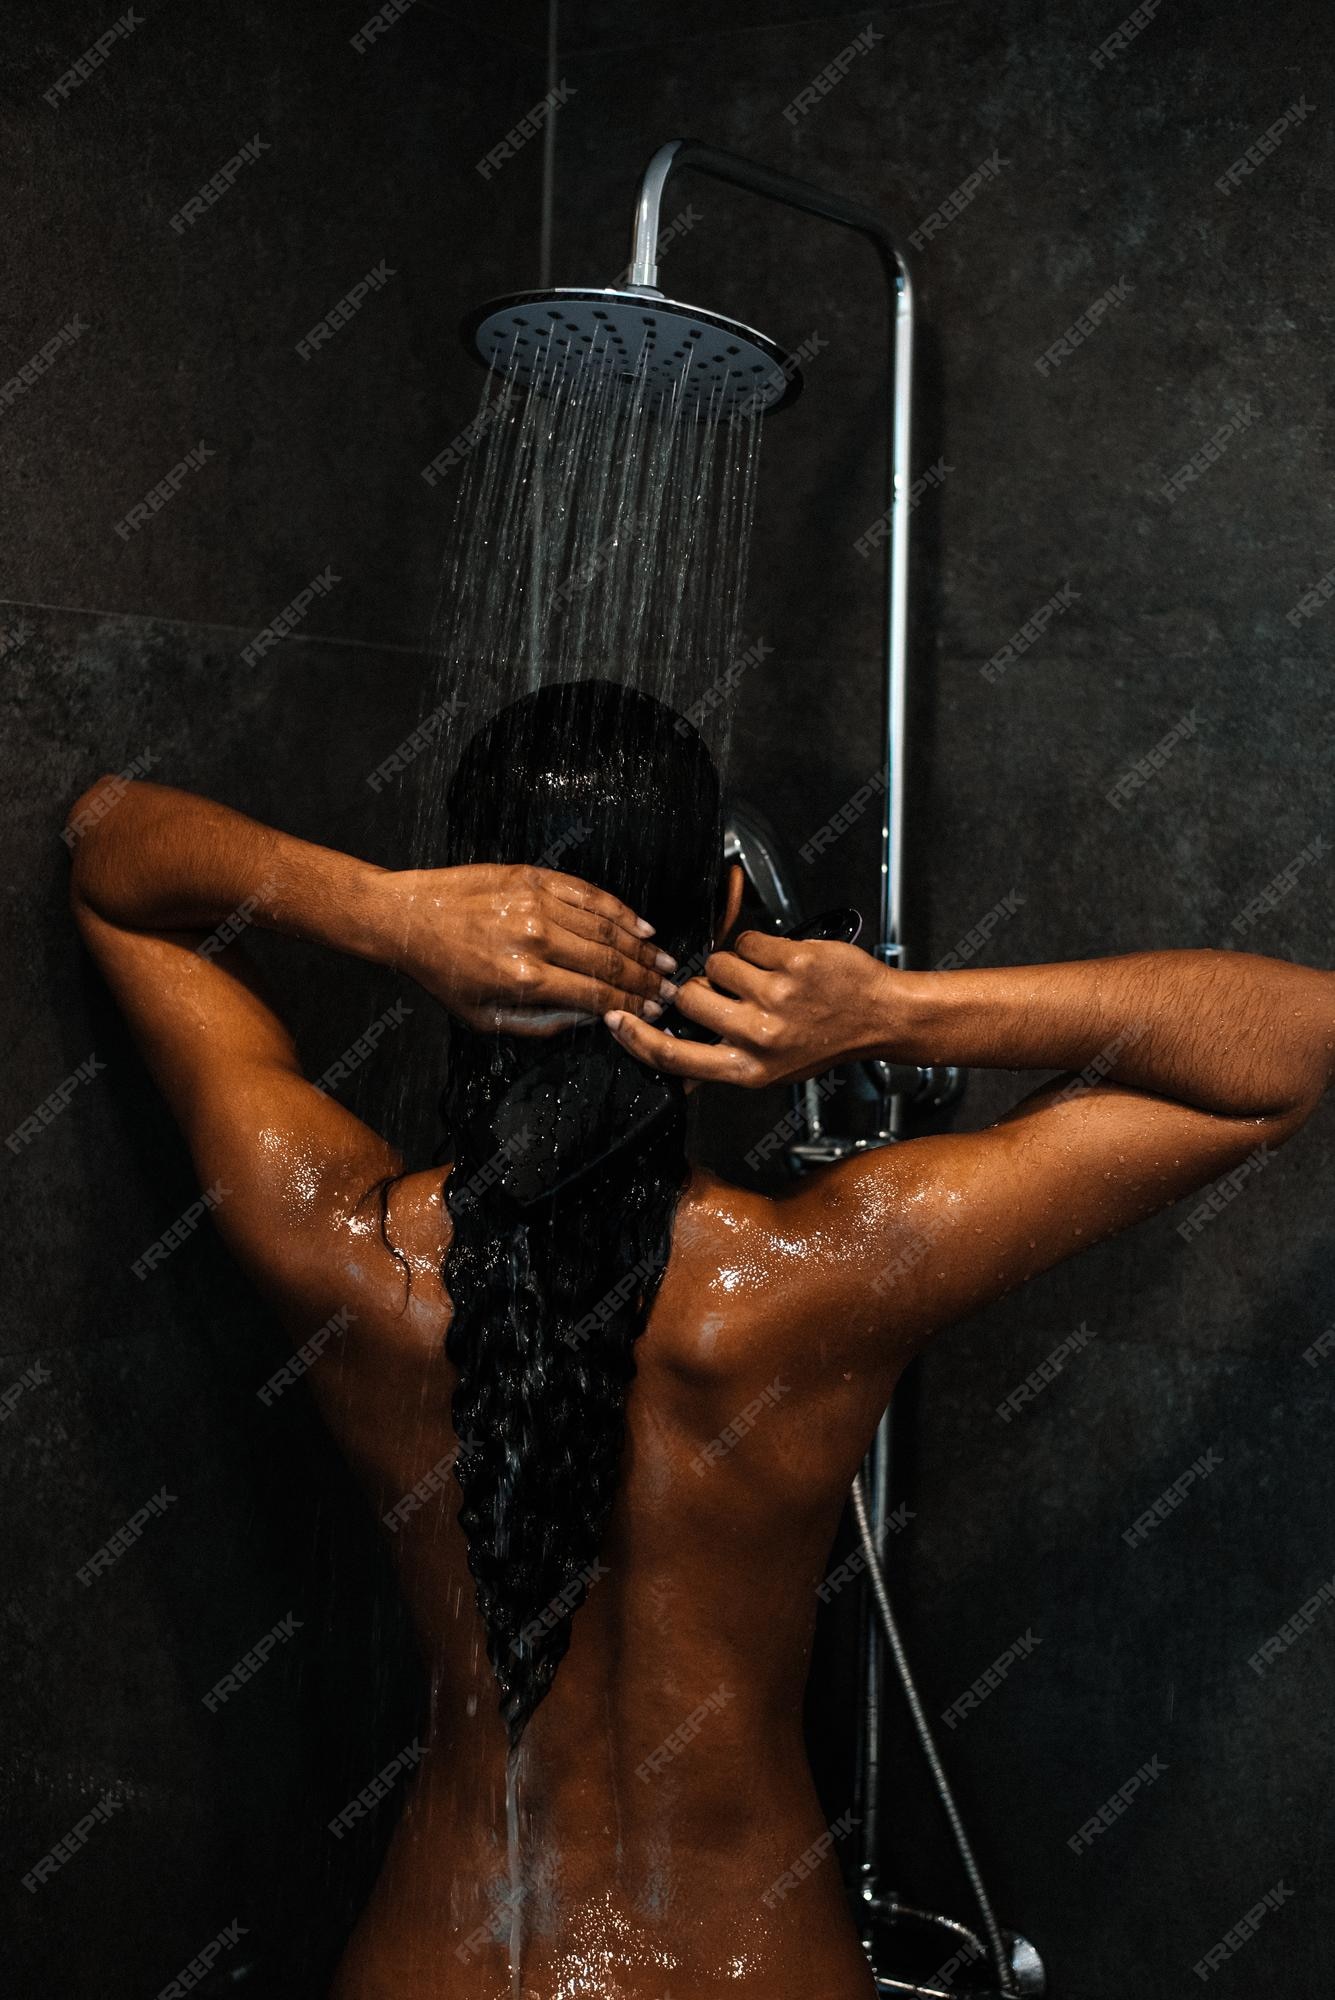 Hot Black Girl In Shower porno vidio